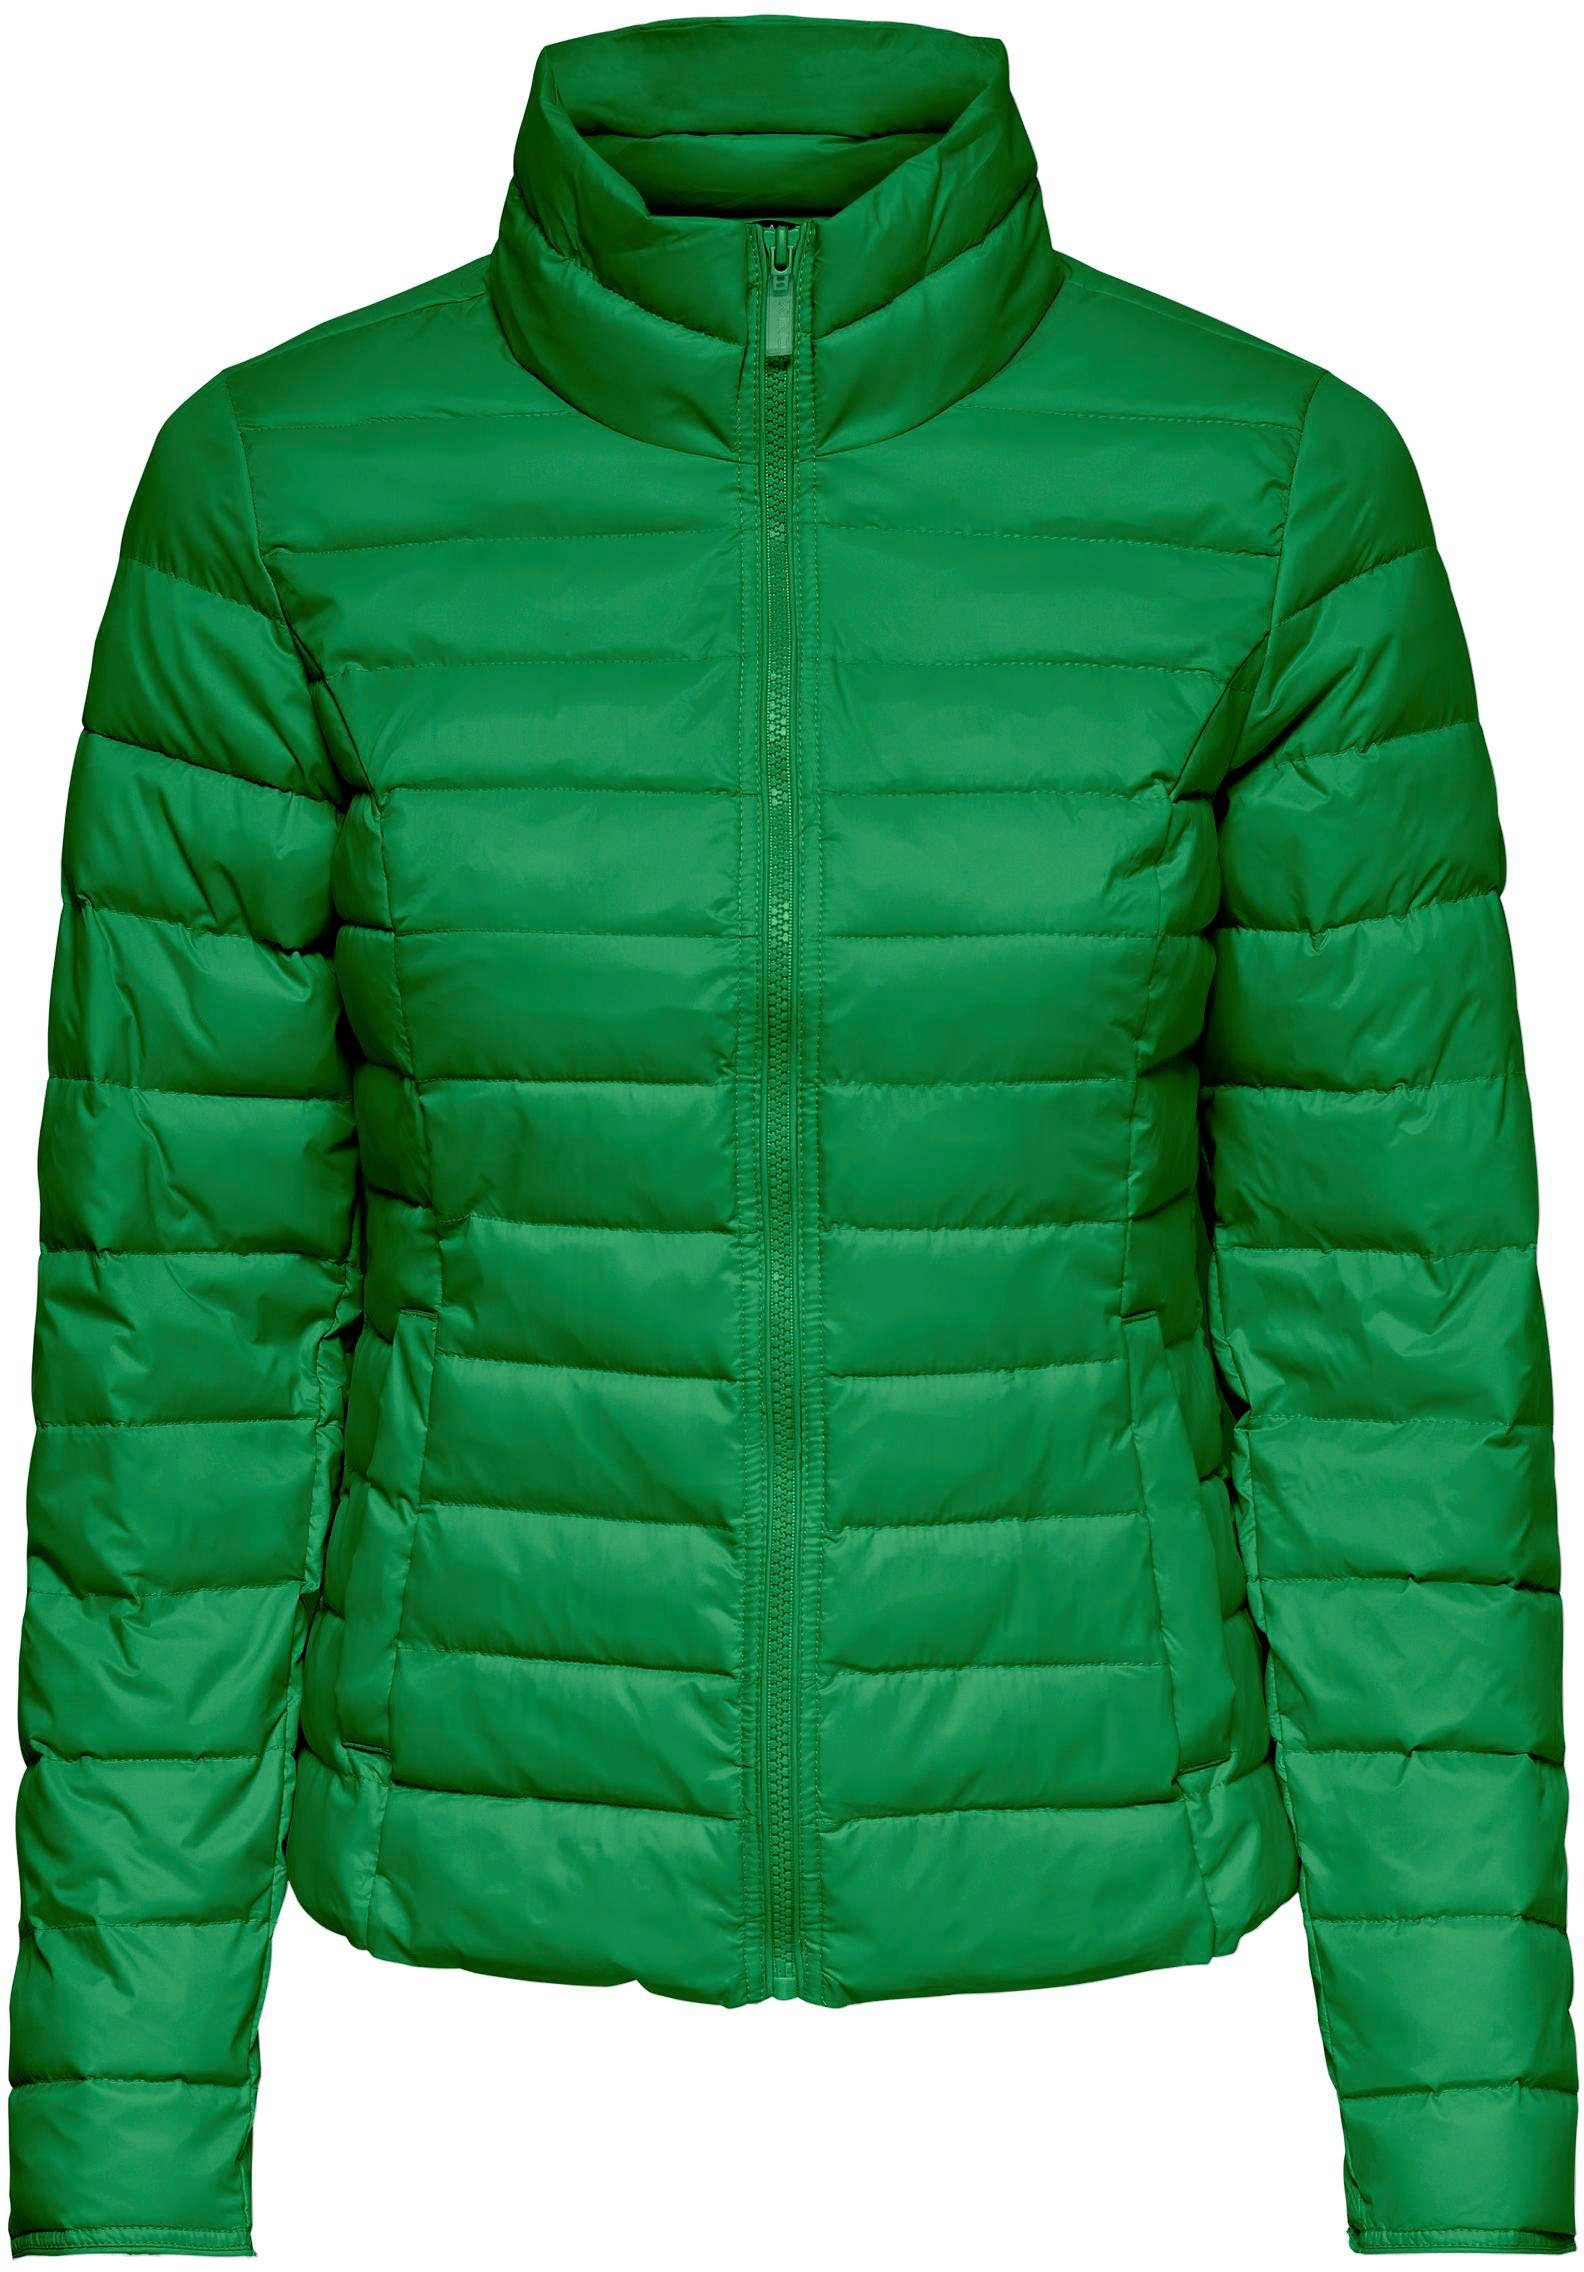 Grüne Only Jacken online kaufen | OTTO